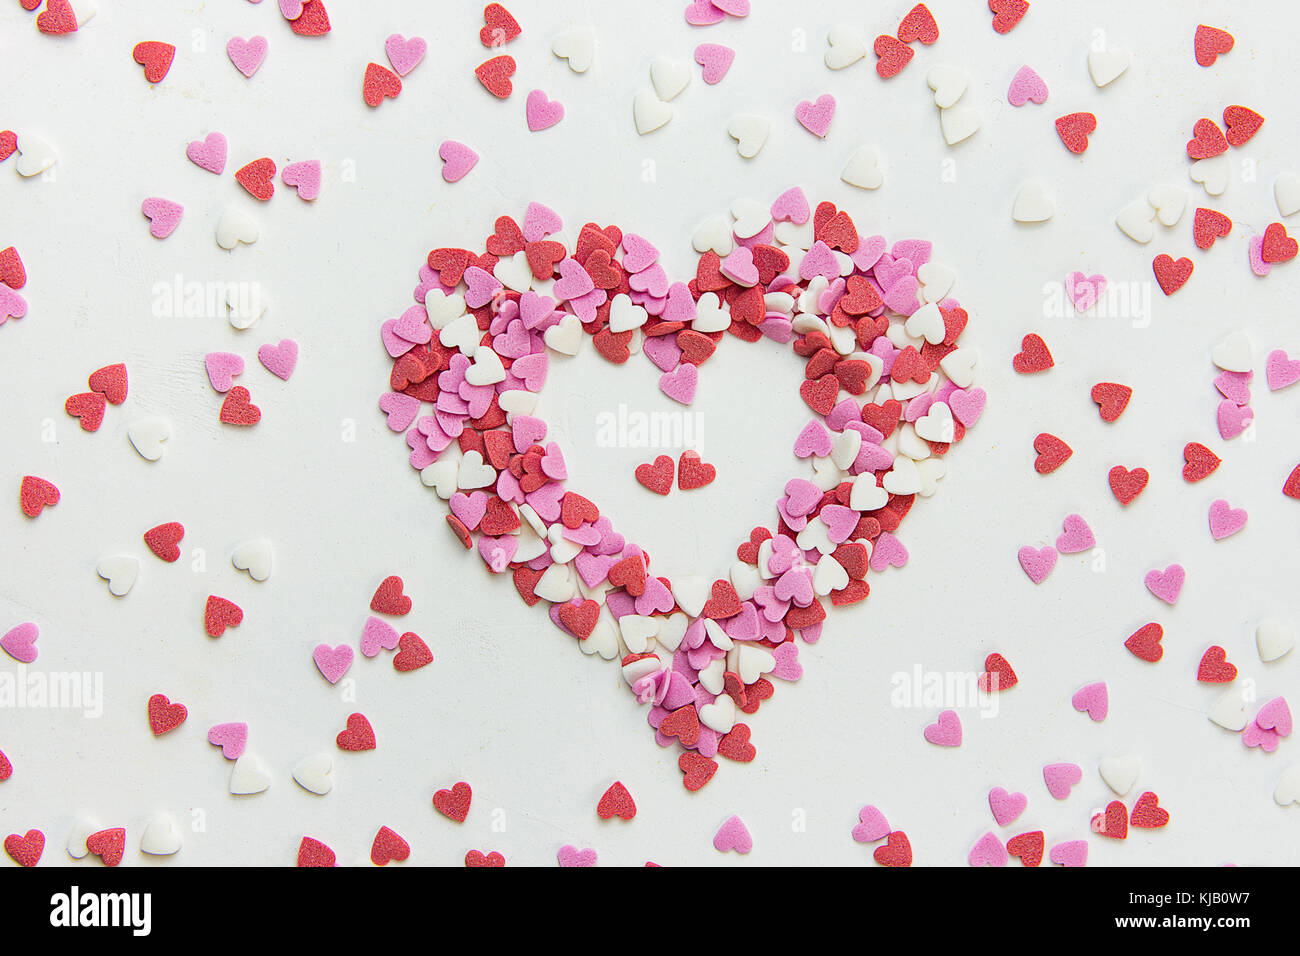 Coeur en multi-couleurs de paillettes de sucre bonbons éparpillés sur fond noir en blanc romantique Saint-Valentin anniversaire la charité. La fête des mères d'accueil. Banque D'Images